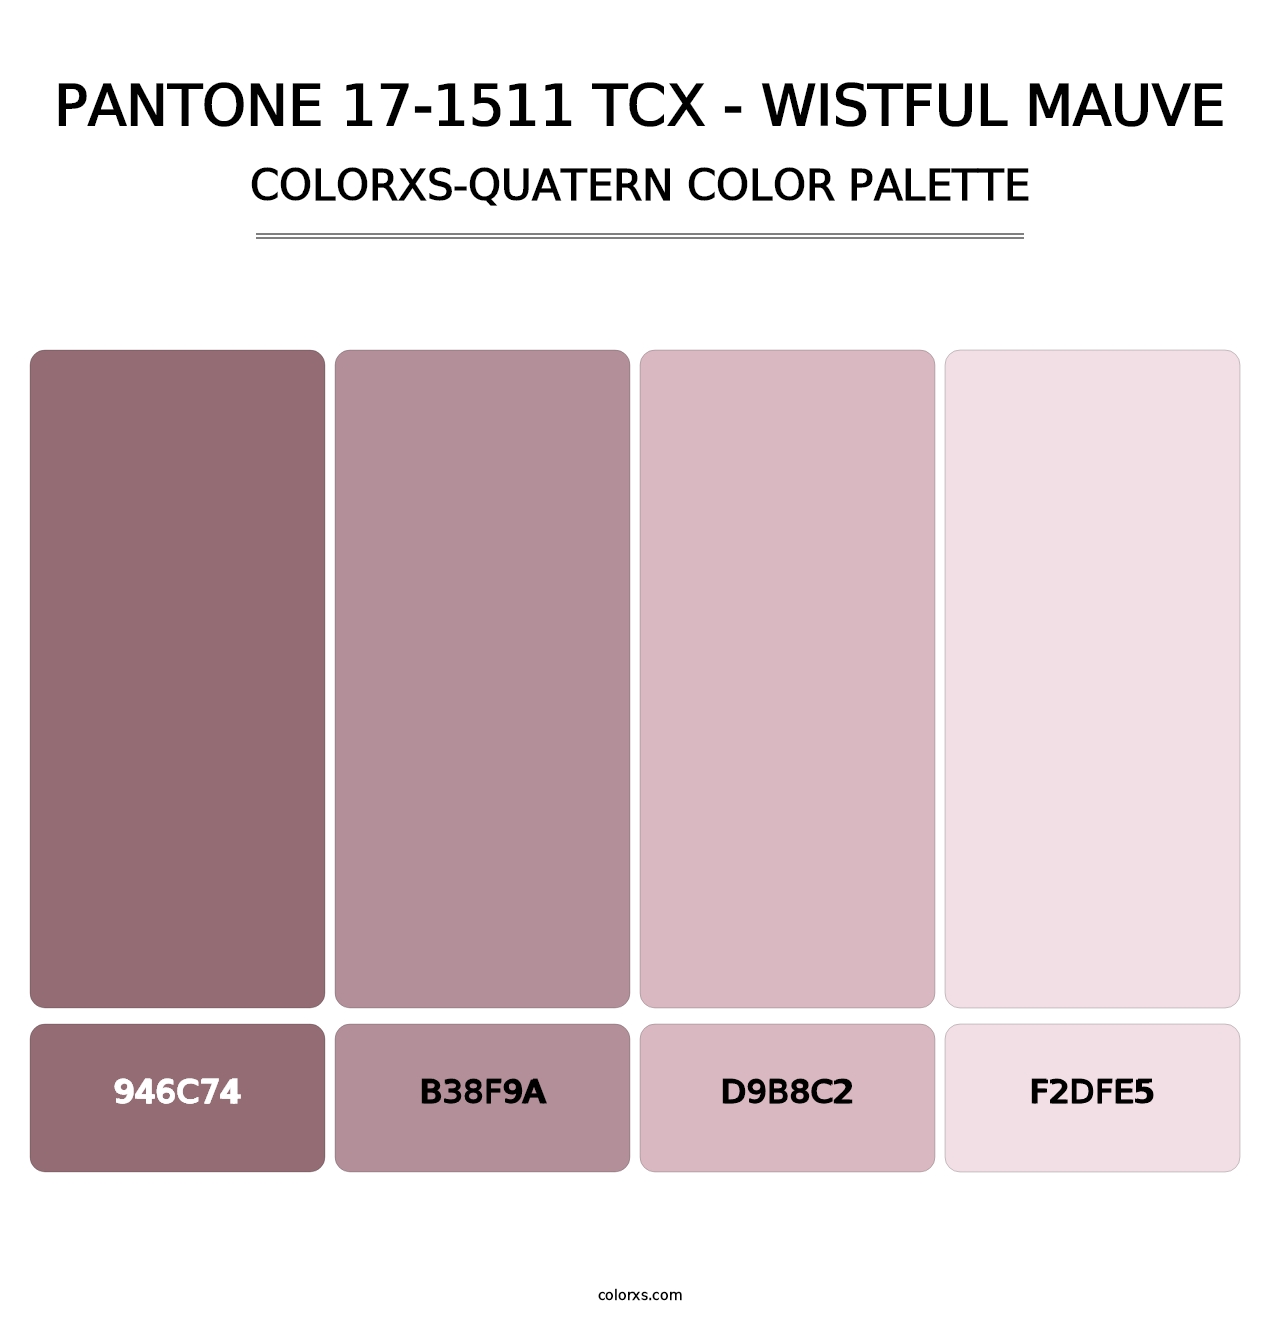 PANTONE 17-1511 TCX - Wistful Mauve - Colorxs Quatern Palette